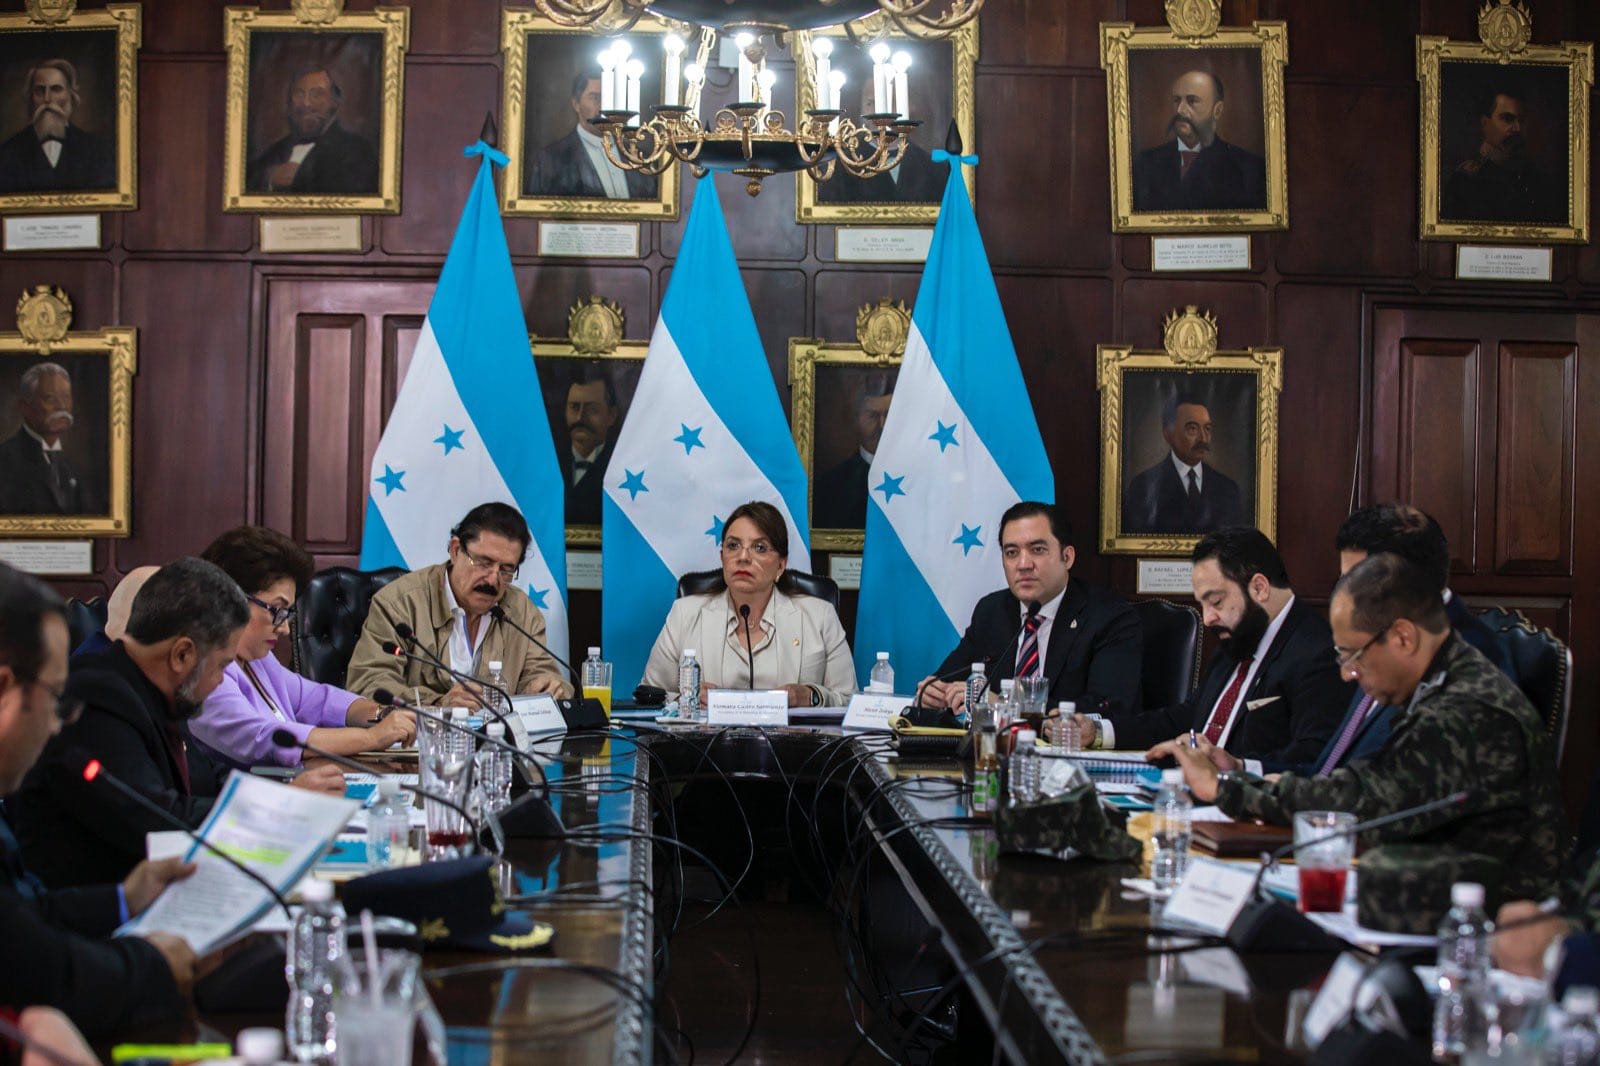 Presidenta Xiomara Castro en Consejo Nacional de Defensa y Seguridad aprueba la segunda etapa del Plan de Seguridad denominado Solución Contra el Crimen